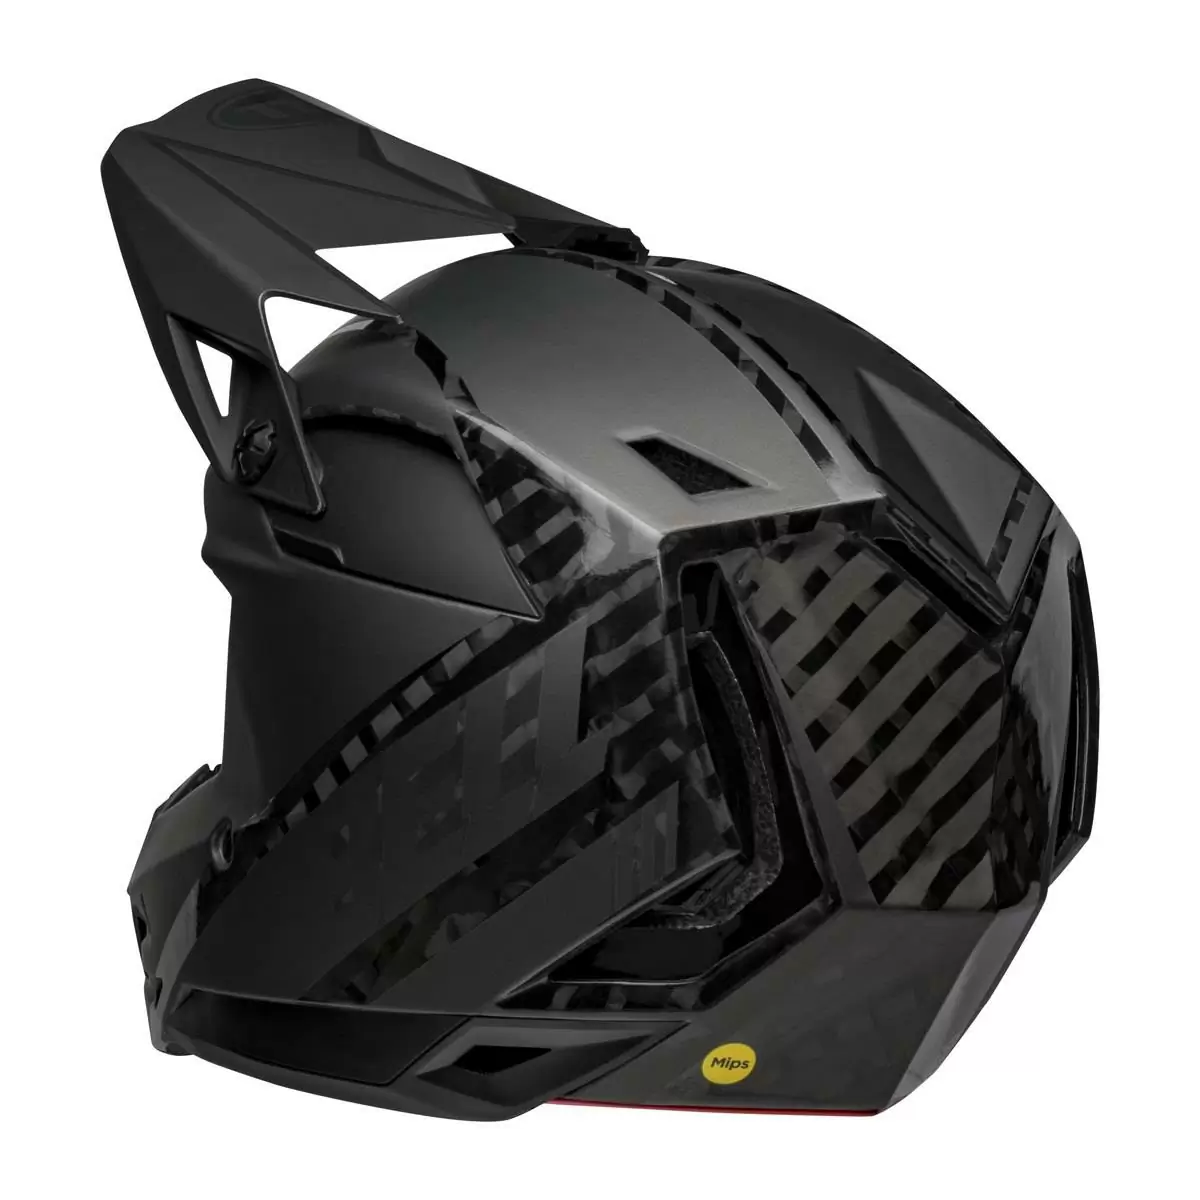 Full-10 Spherical Arise Matte / Gloss Black Carbon Full Face Helmet Size XS/S (51-55cm) #3